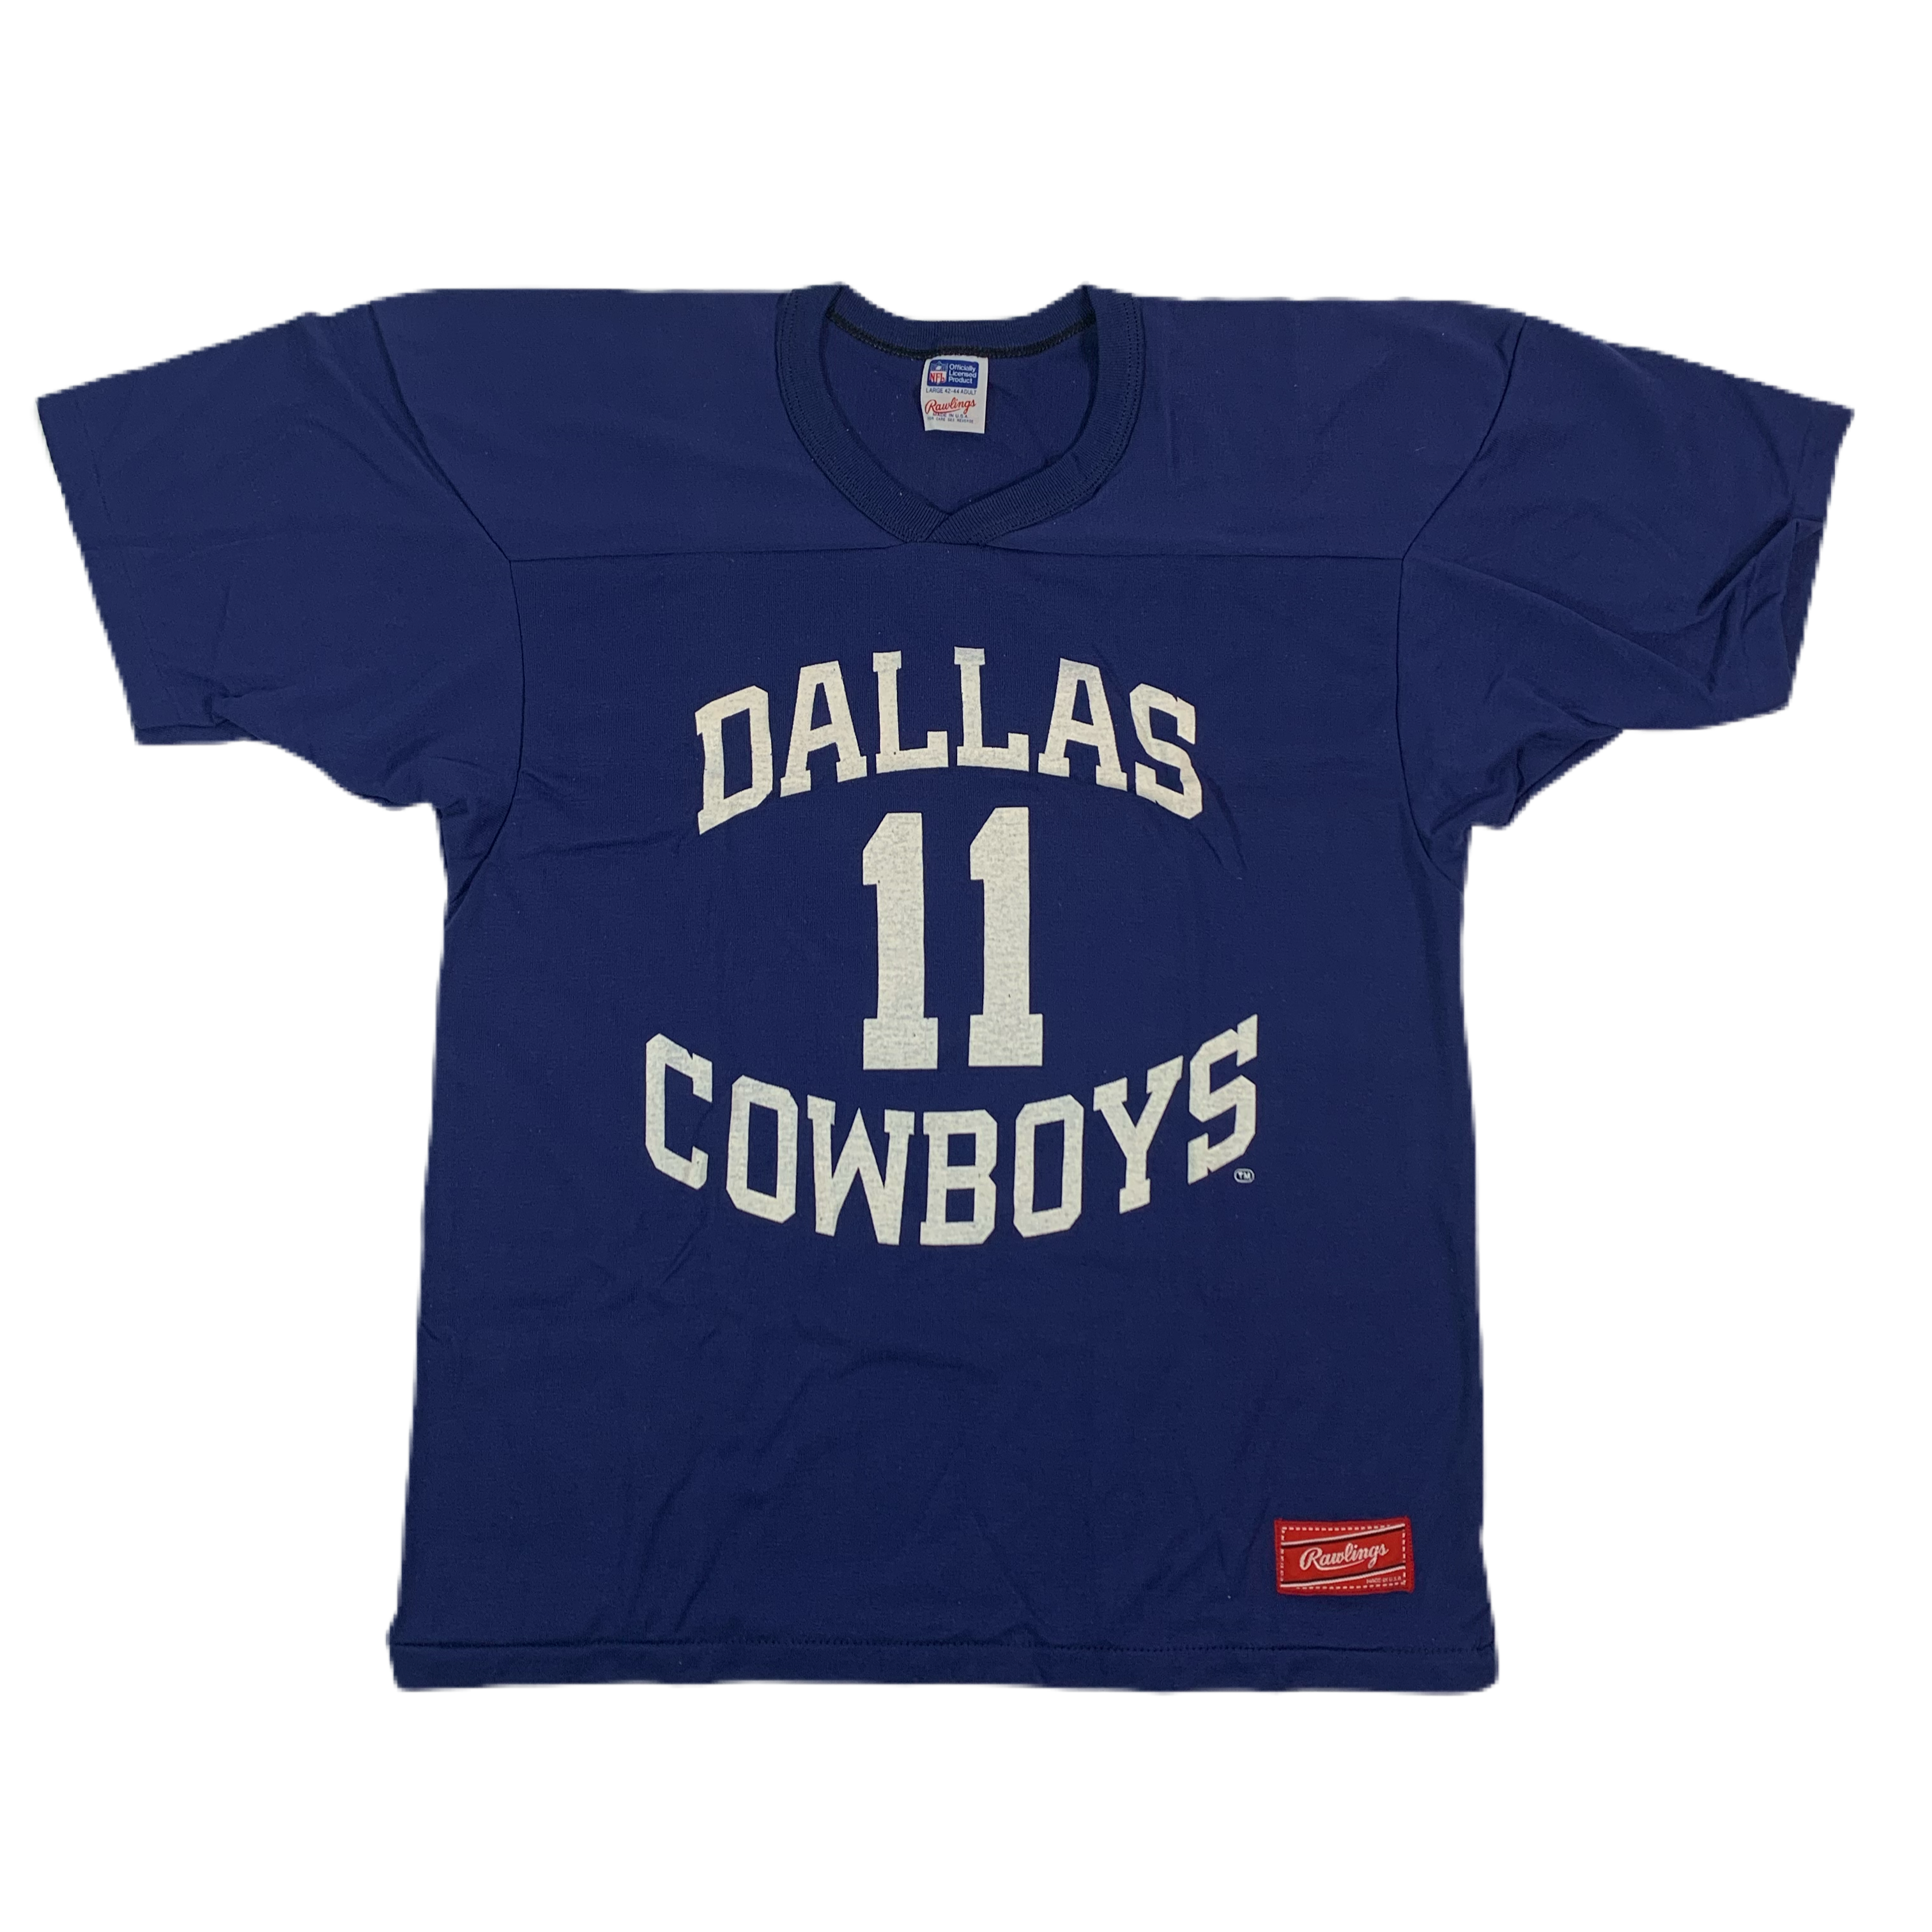 新品Dallas Cowboys チャンピオンシップ T シャツ サイズ2XL - トップス